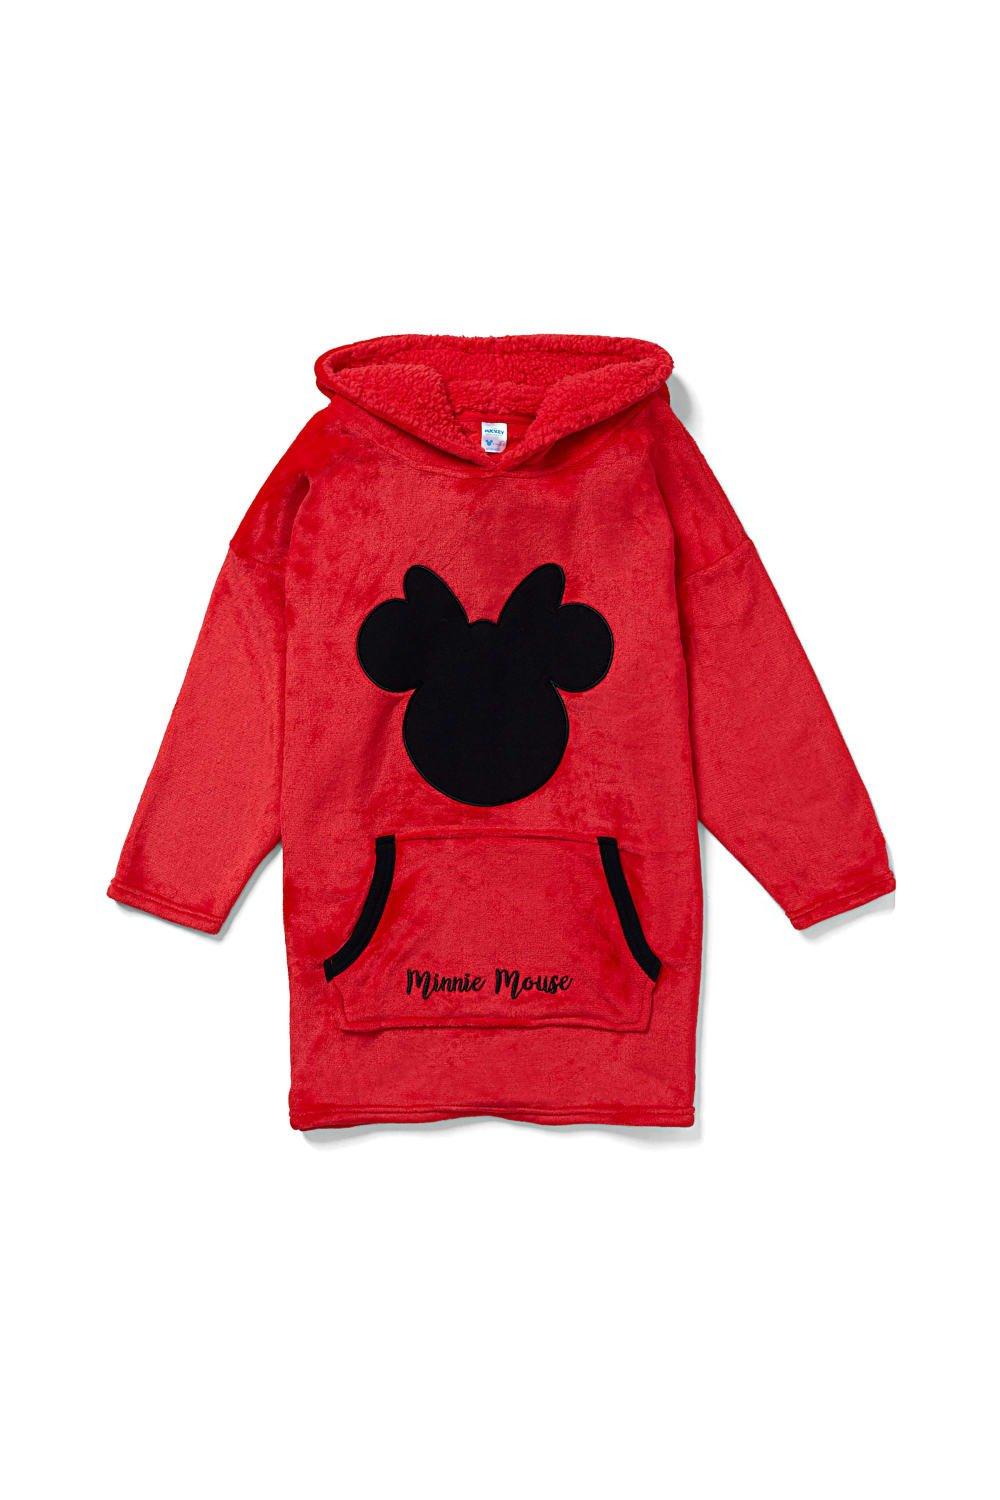 Объемное флисовое одеяло с капюшоном и Минни Маус, одежда для дома Disney, красный наклейка патч для одежды минни маус 1